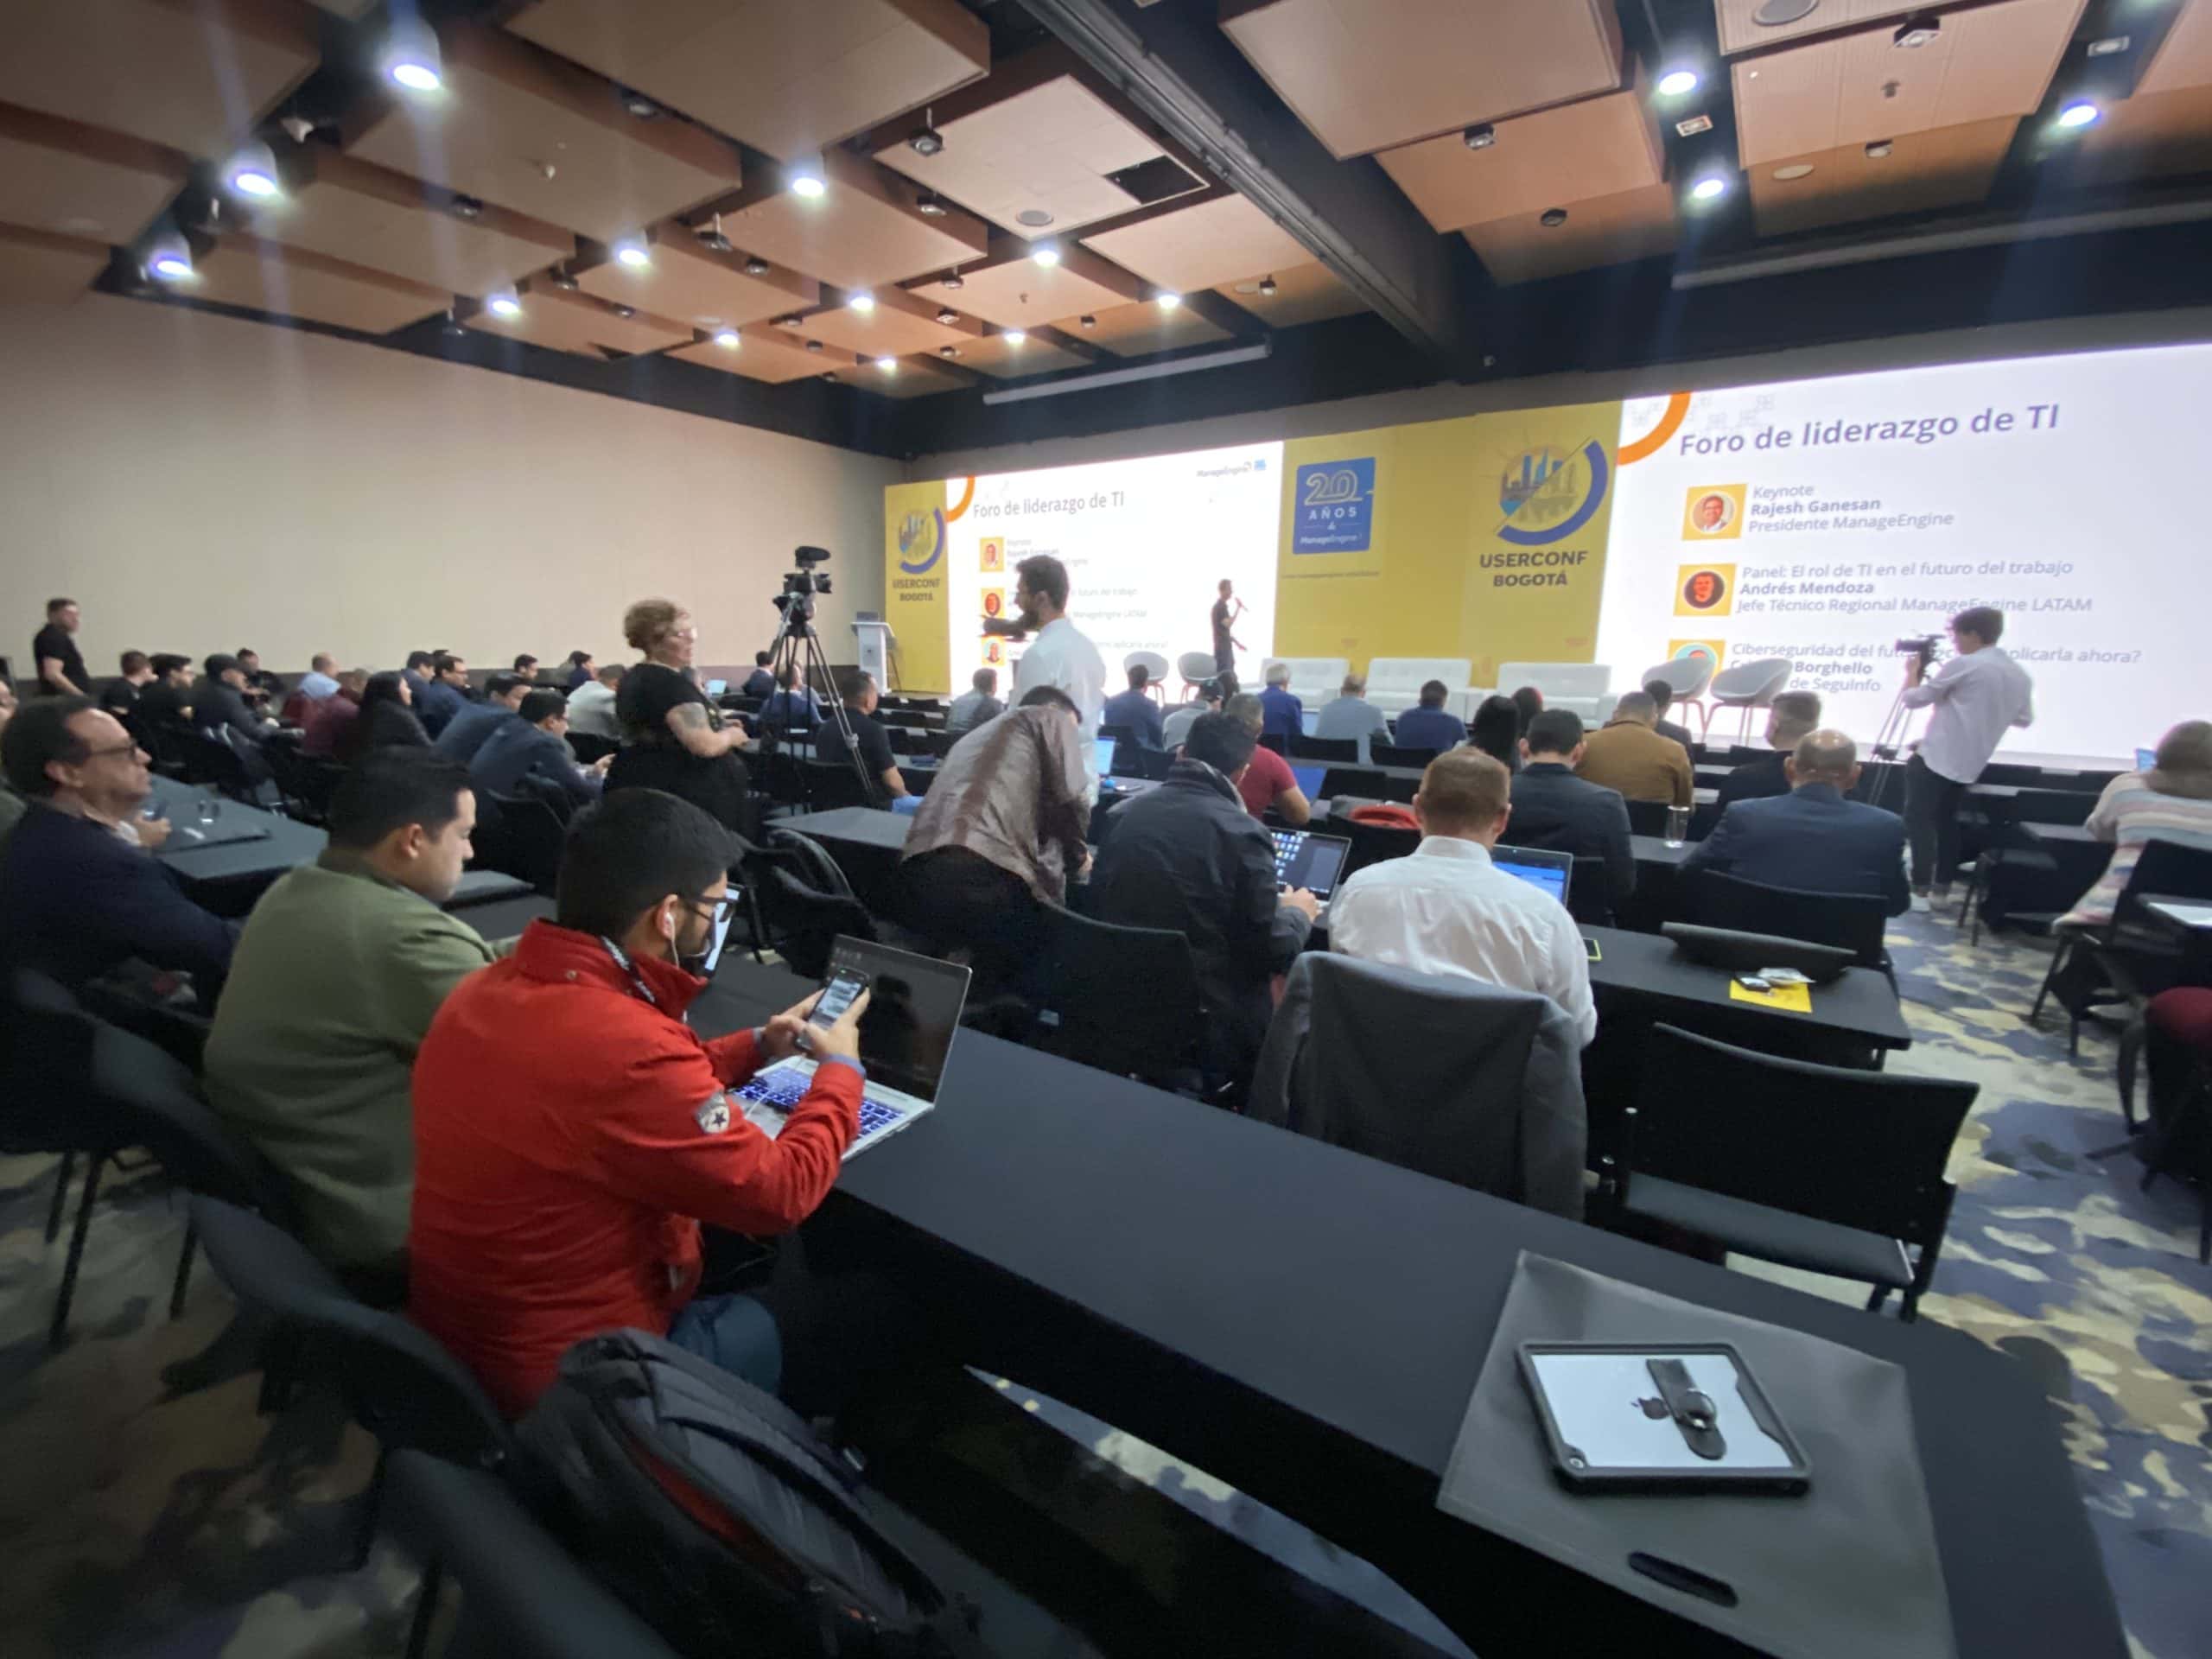 User Conference de ManageEngine en Bogotá: evolución de TI en el trabajo y mucho más